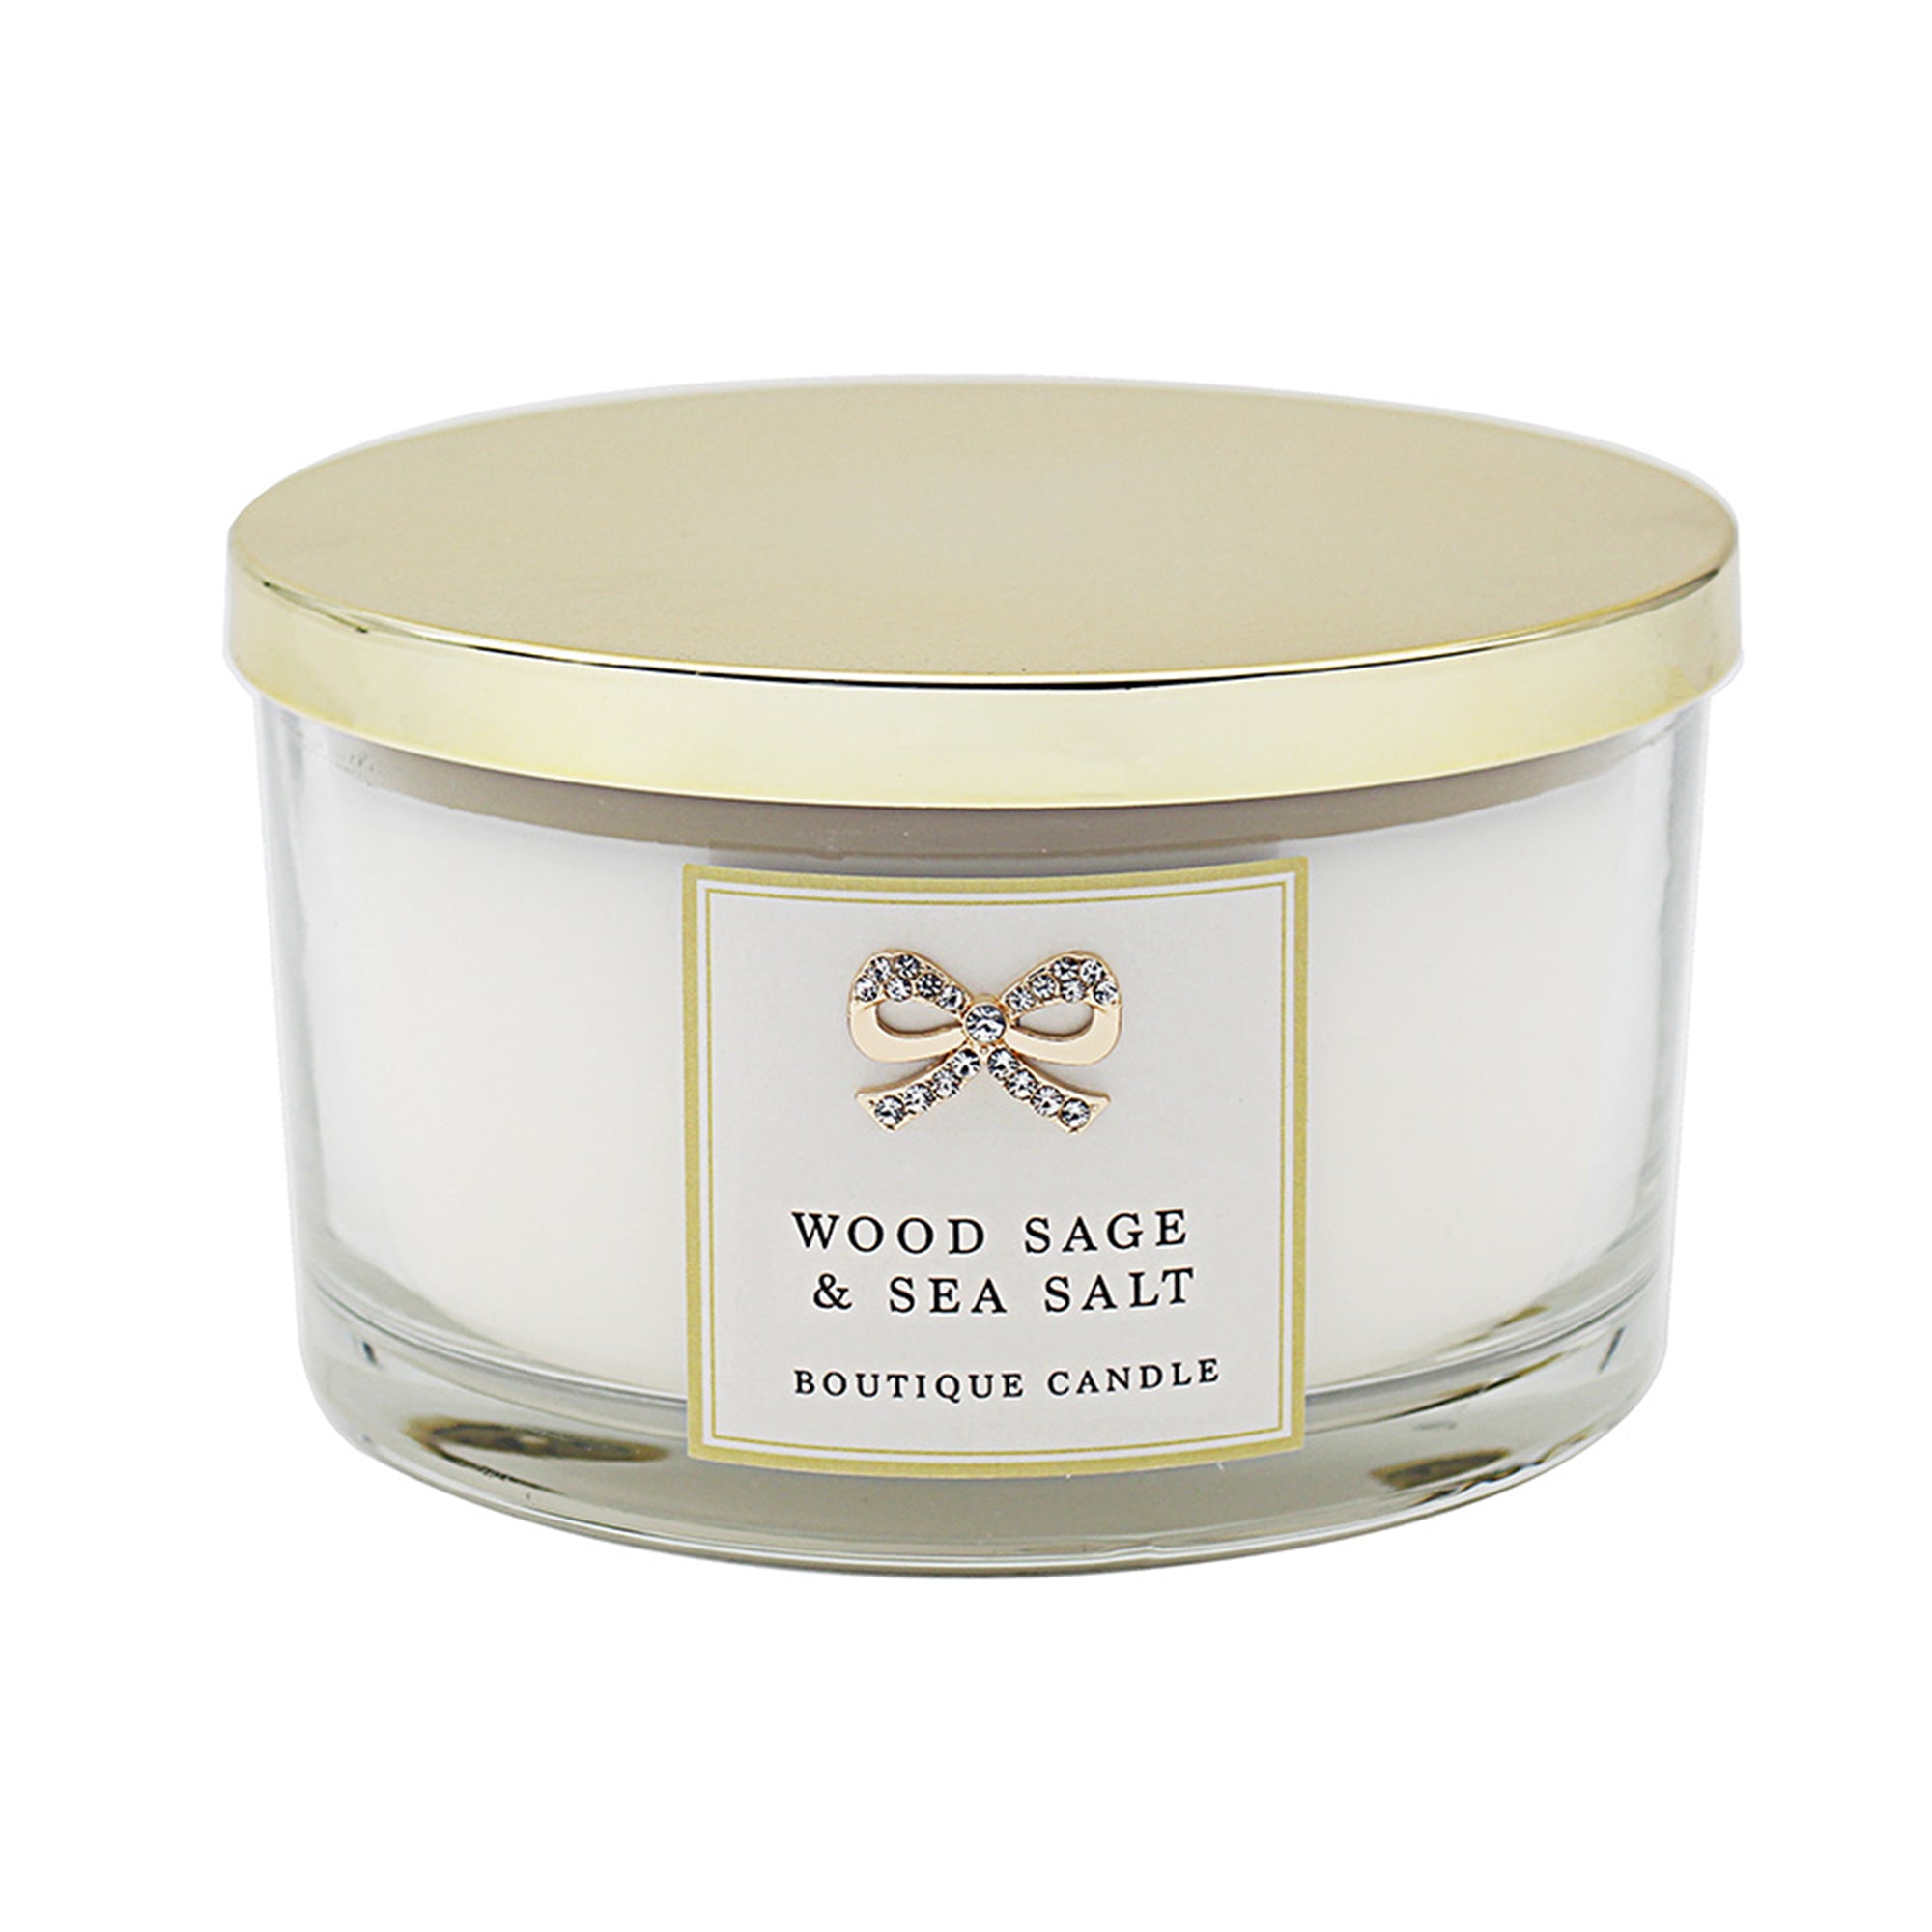 Wood Sage & Sea Salt Candle Jar